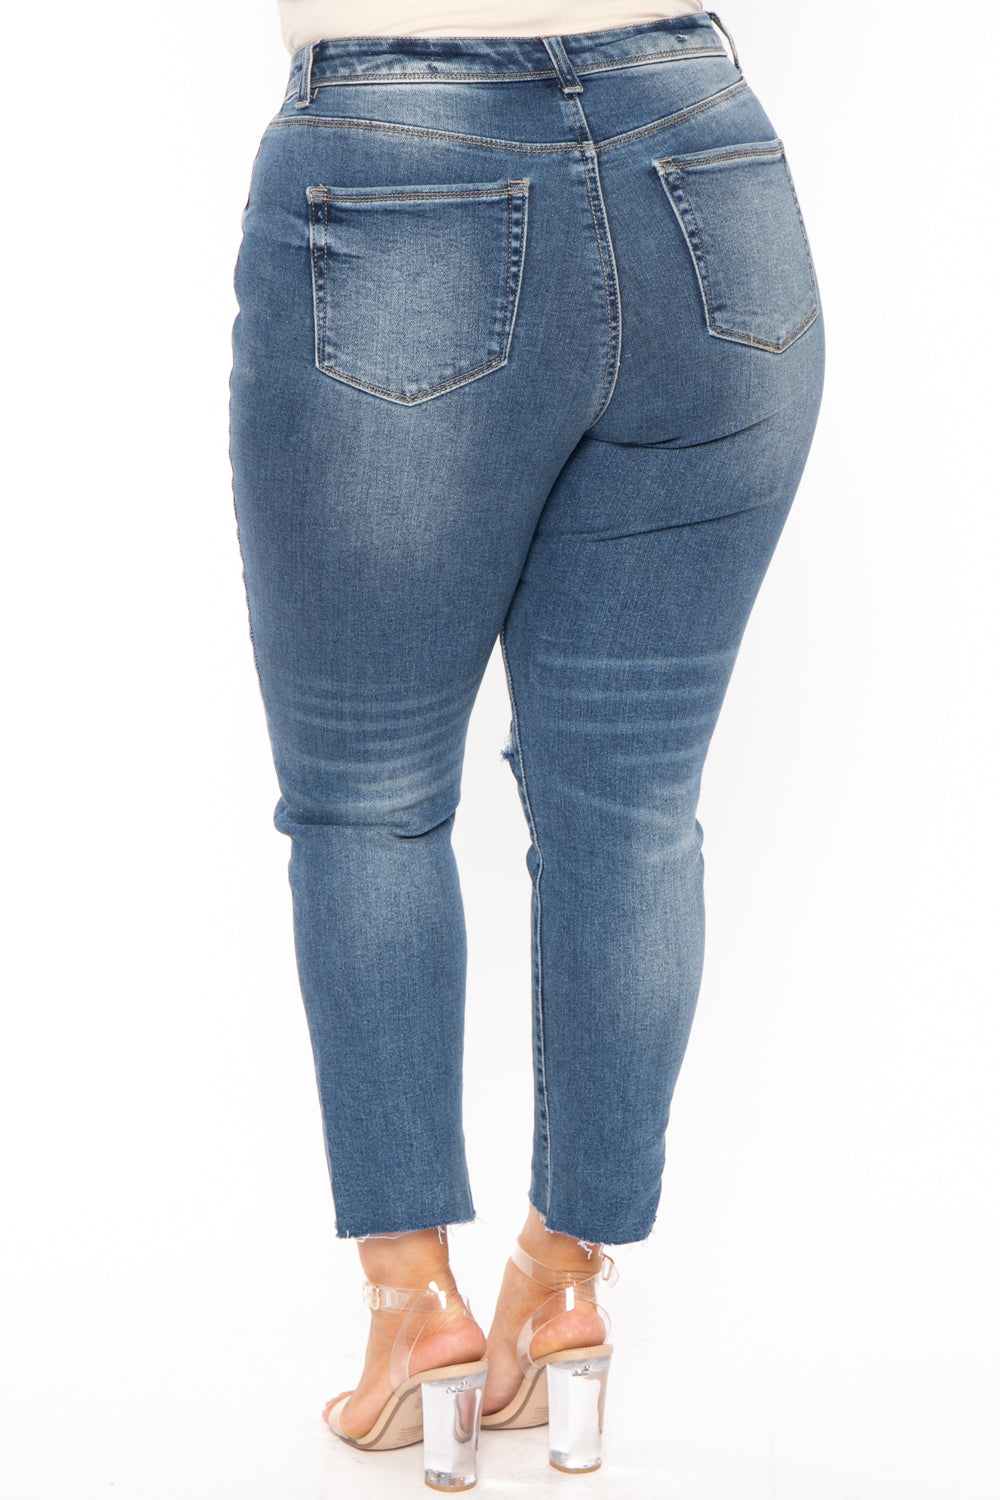 Wax Jean Jeans Plus Size High Rise Raw Hem Jean - Medium Wash